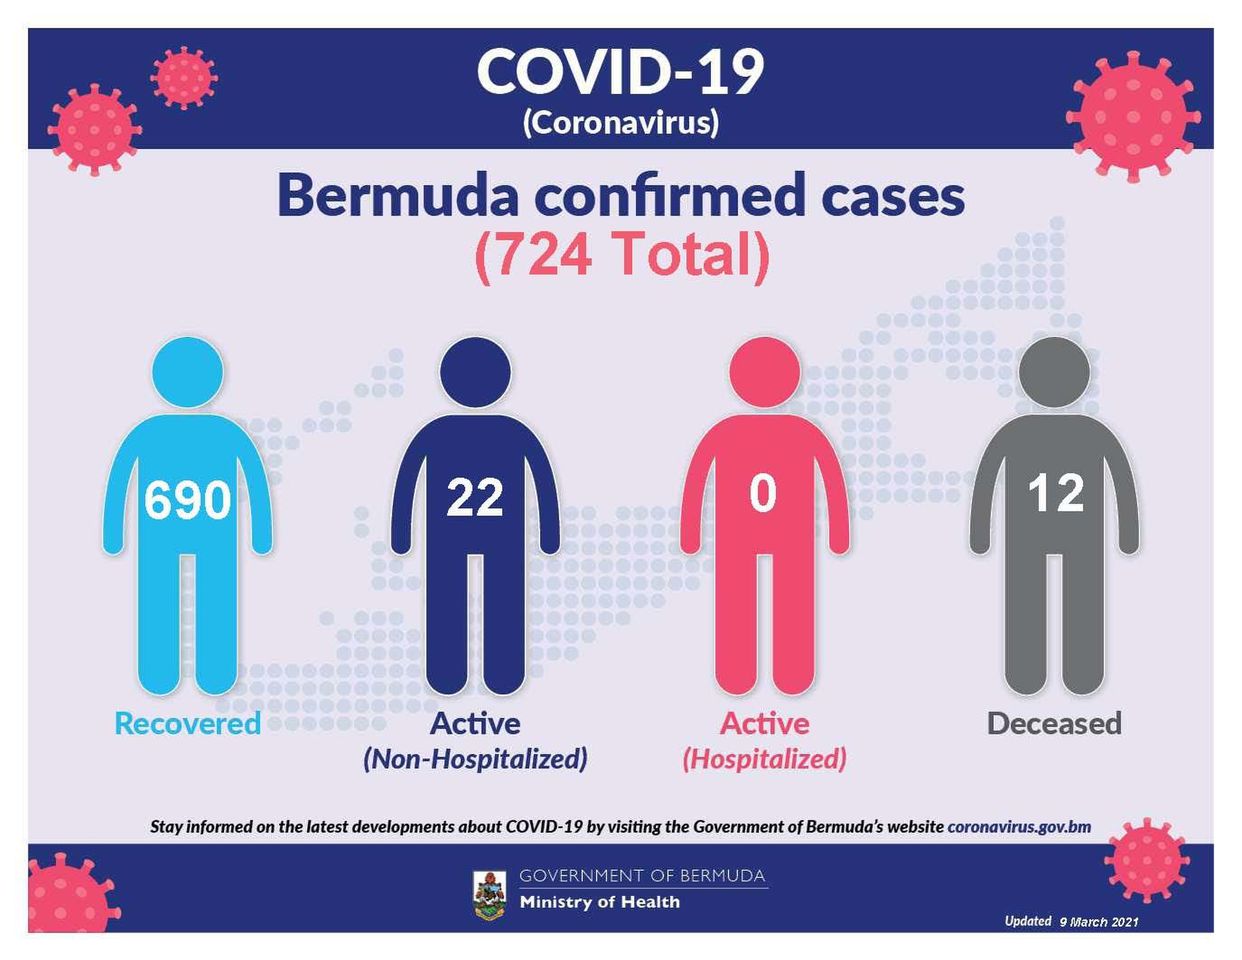 No new COVID-19 cases reported in Bermuda, 9 March 2021